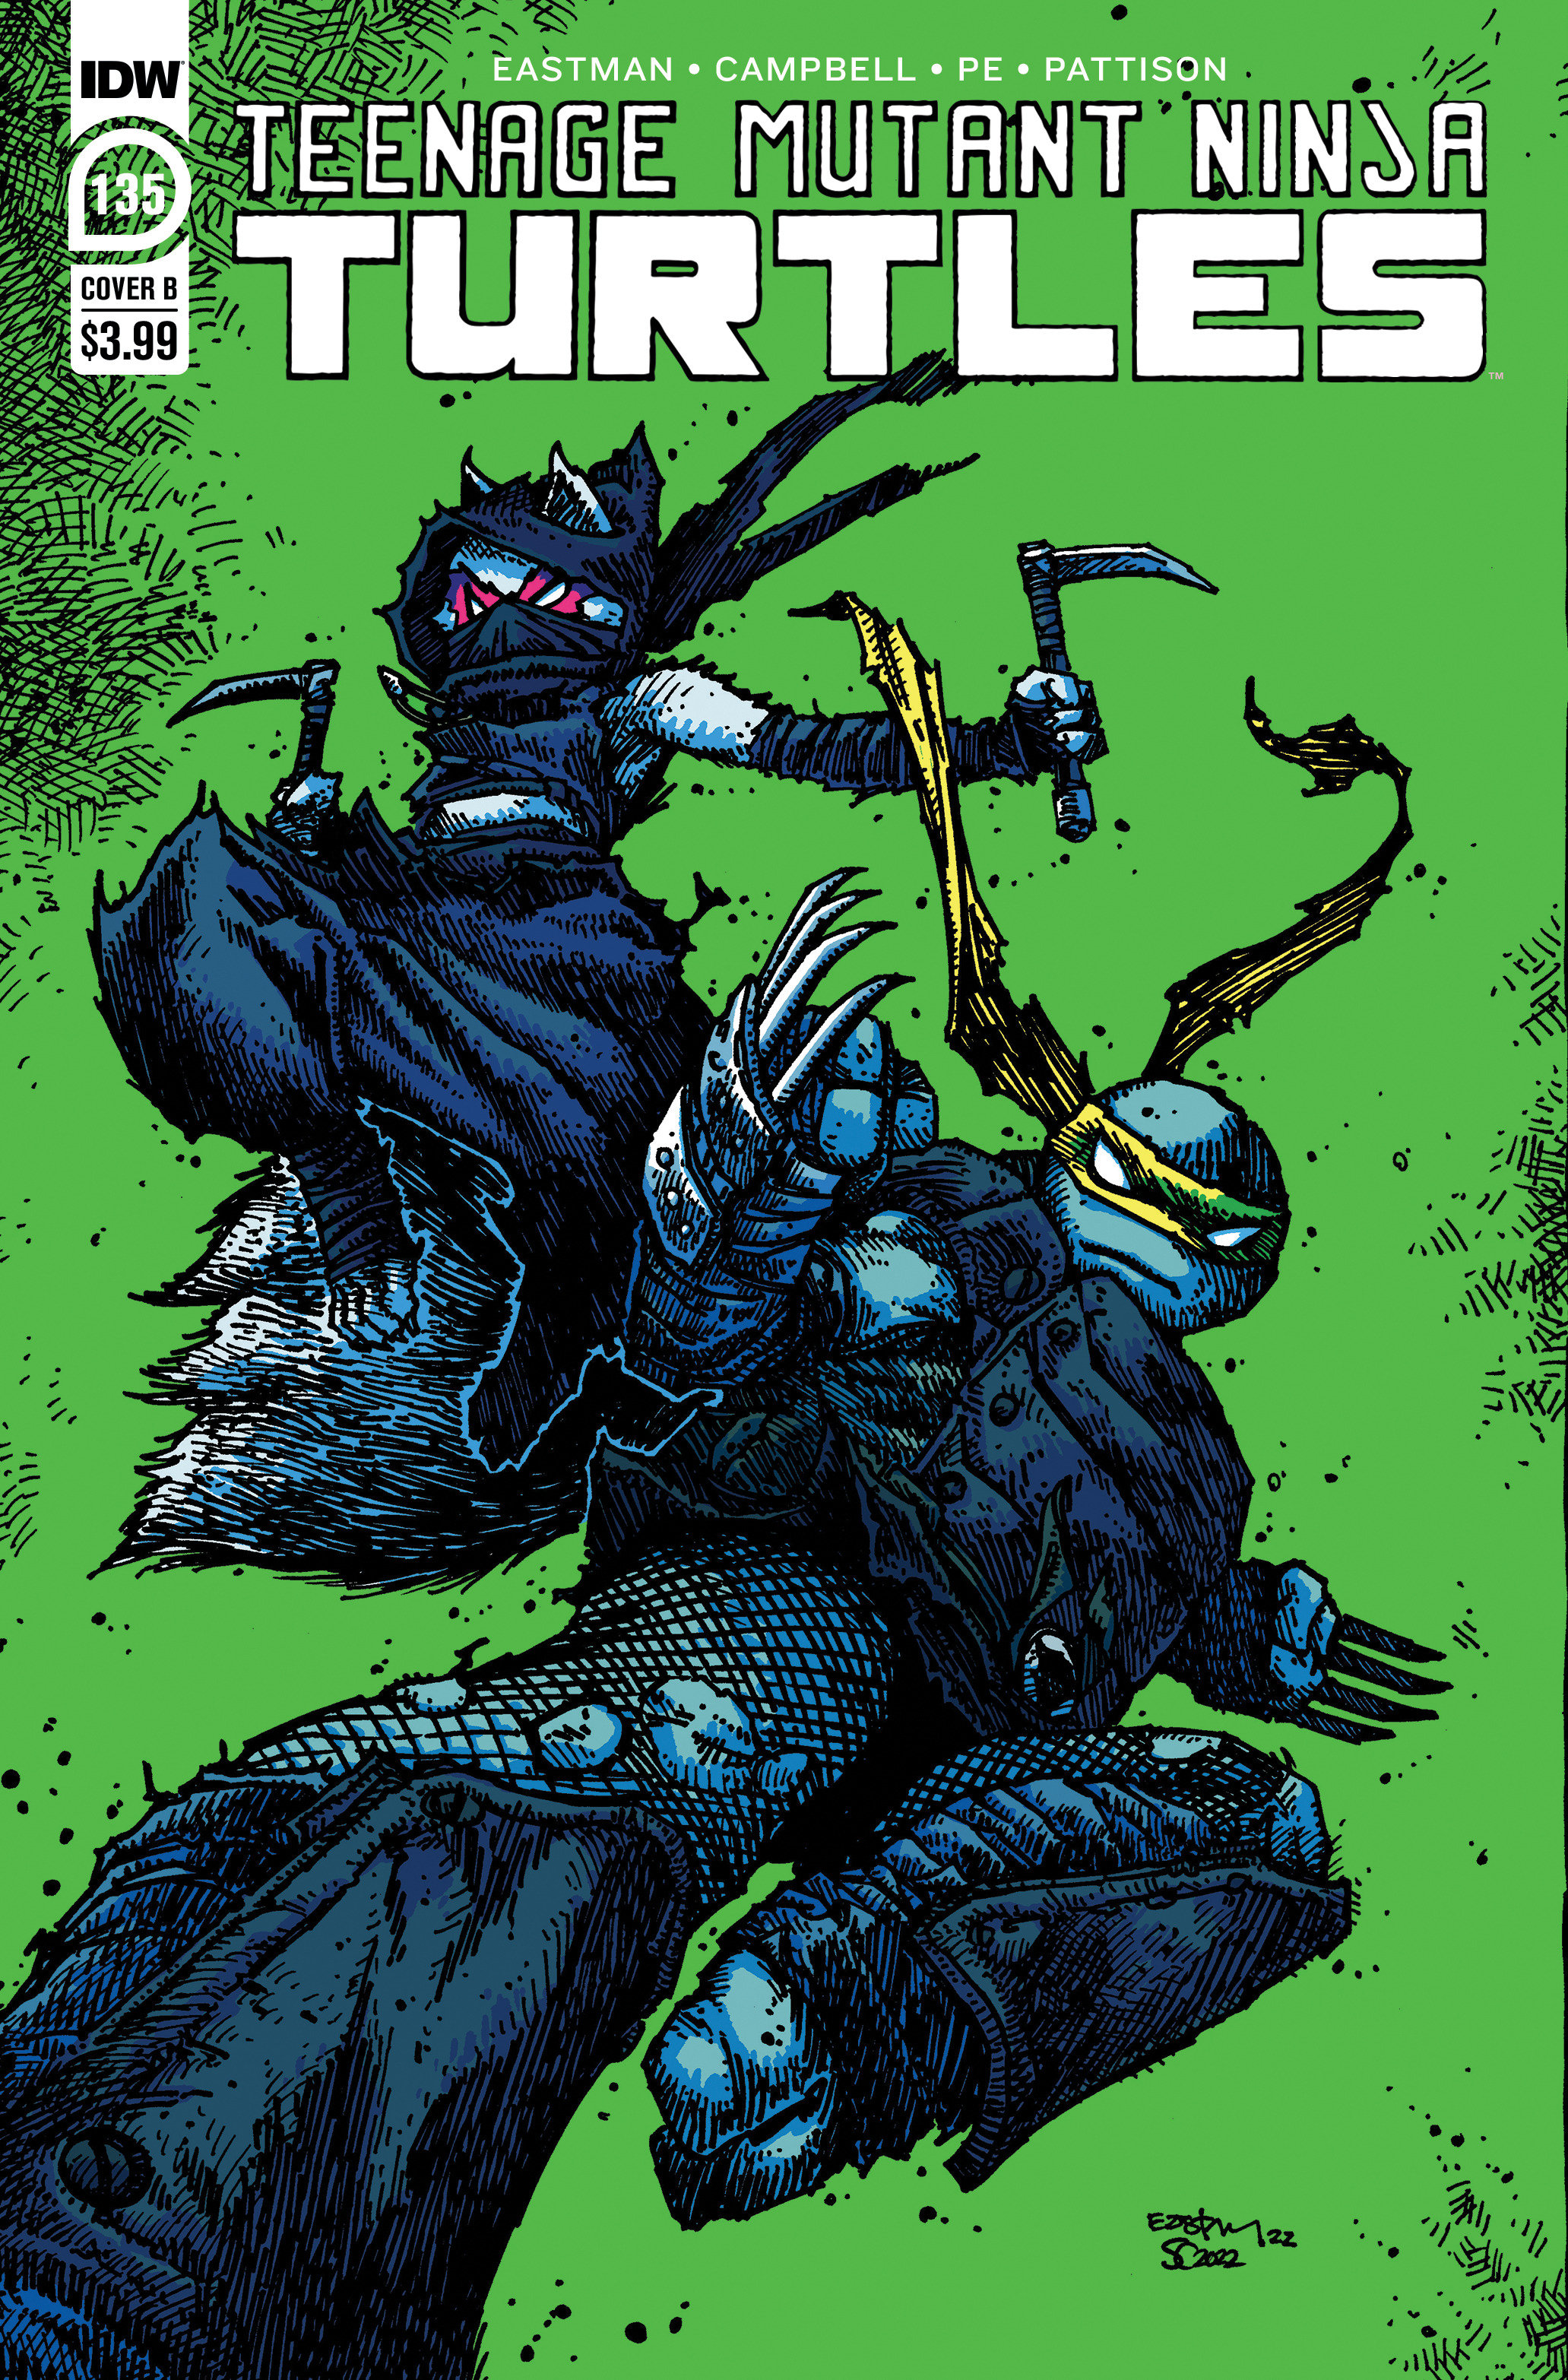 Teenage Mutant Ninja Turtles Ongoing #135 Cover B Eastman (2011)